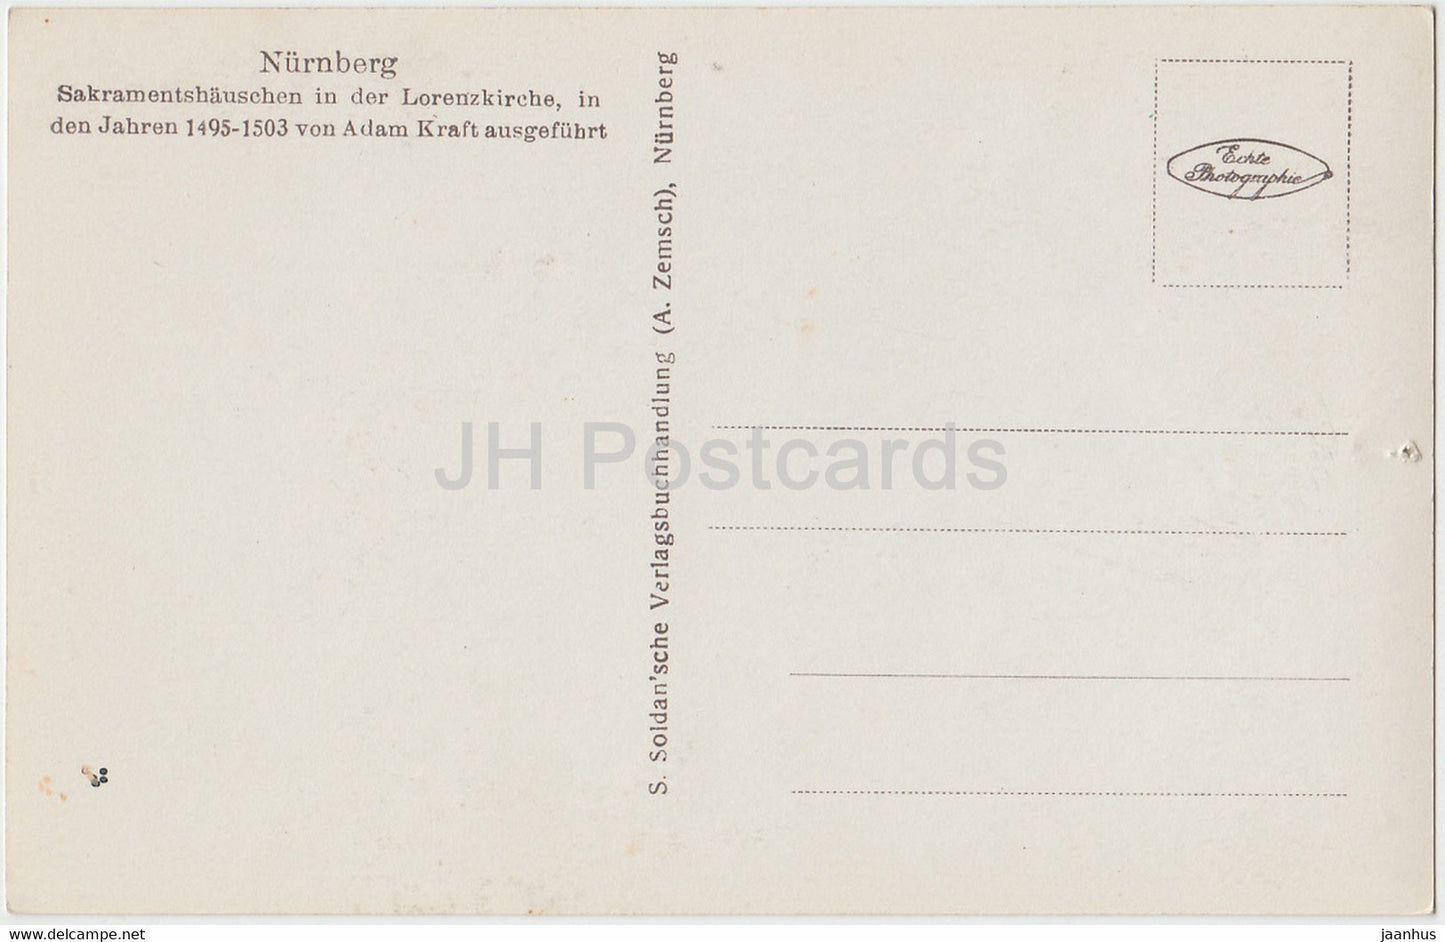 Nurnberg - Sakramentshauschen in der Lorenzkirche - church - old postcard - Germany - unused